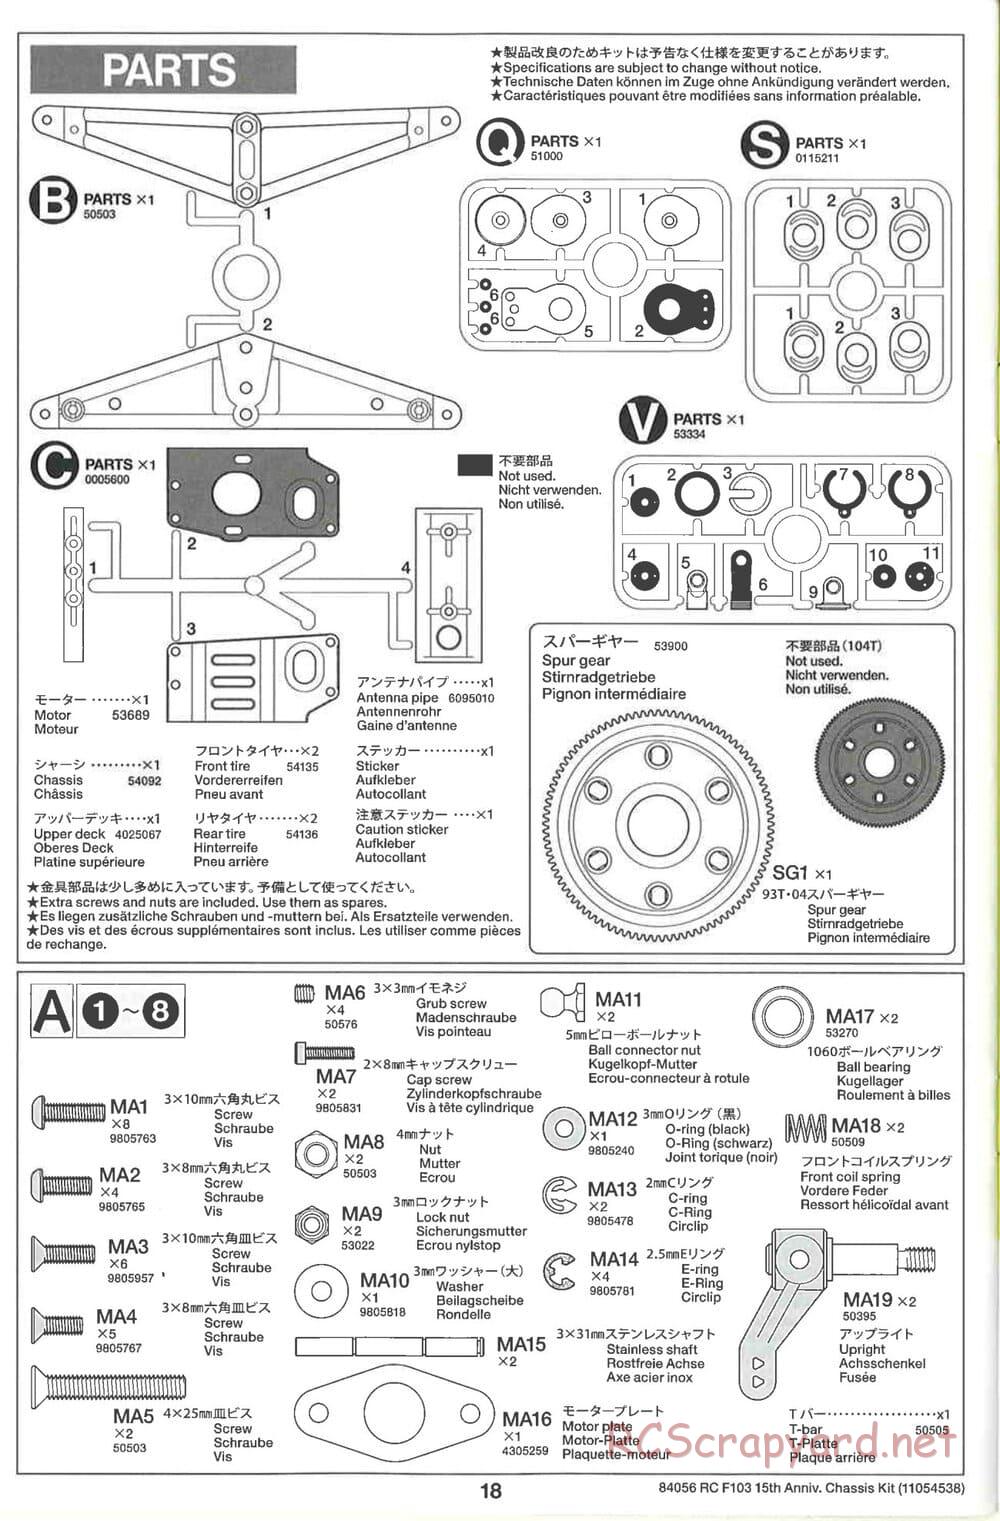 Tamiya - F103 15th Anniversary Chassis - Manual - Page 18